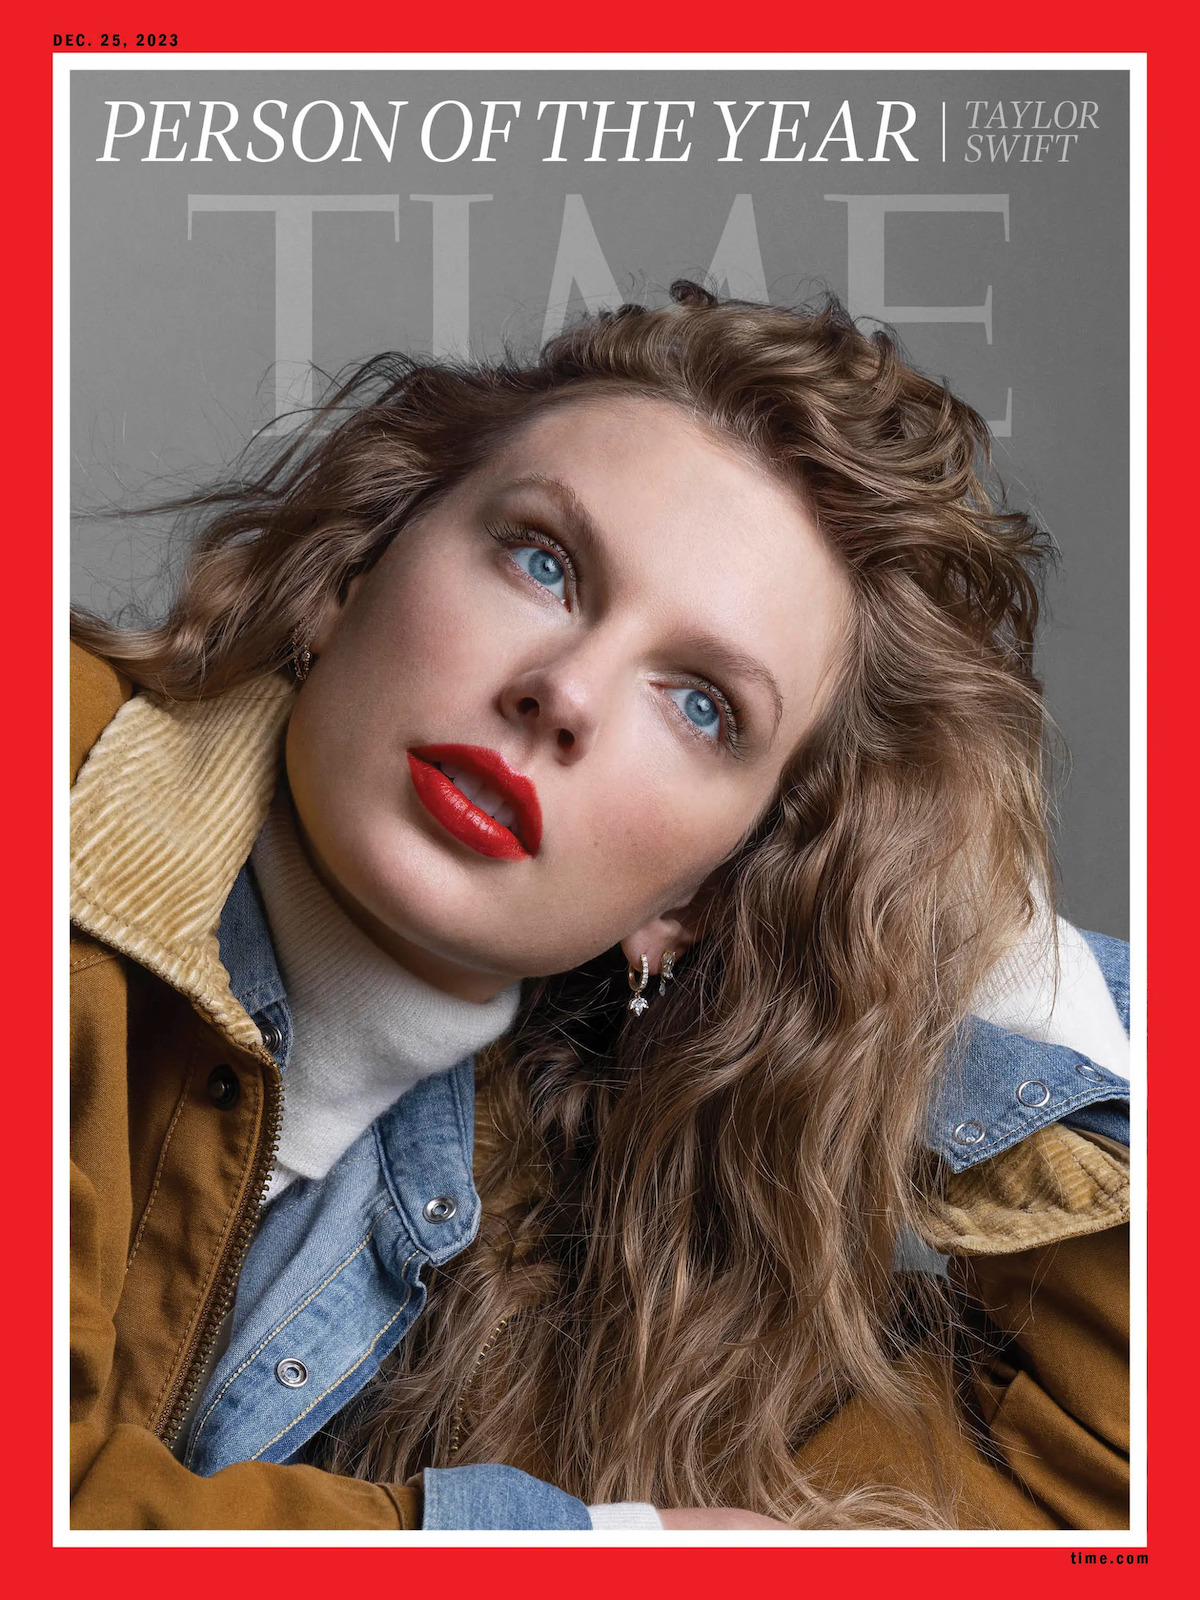 Taylor Swift sulla copertina di Time come "persona dell'anno"